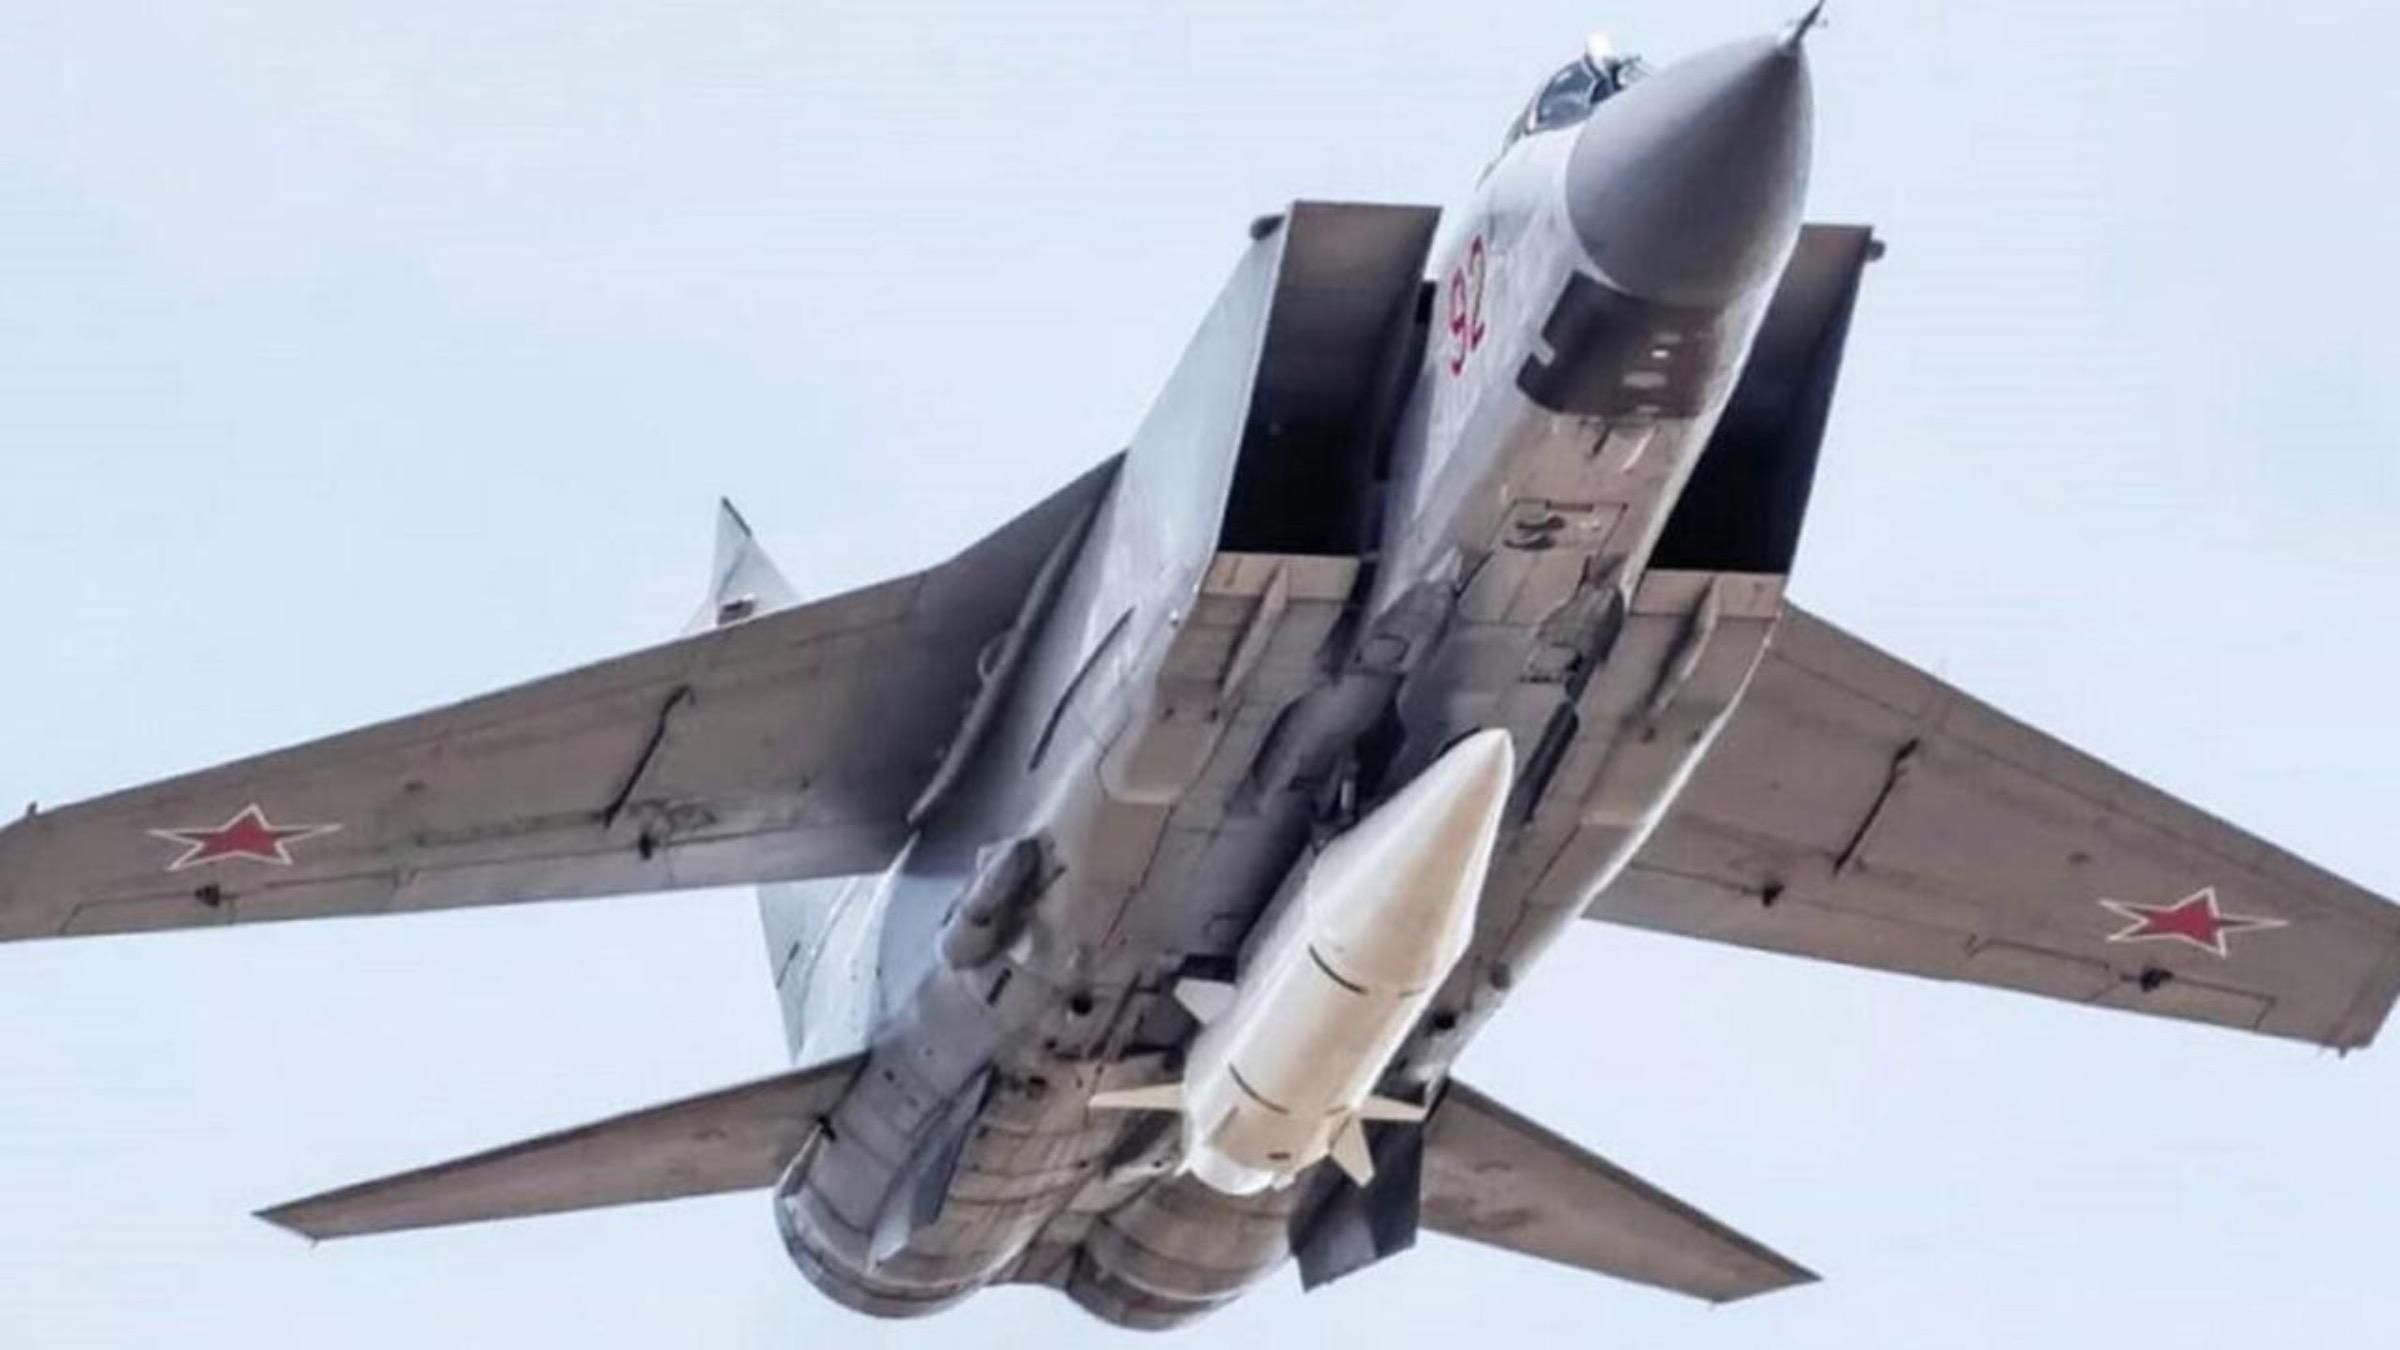 Россияне массово применили ракеты "Кинжал" - что это значит